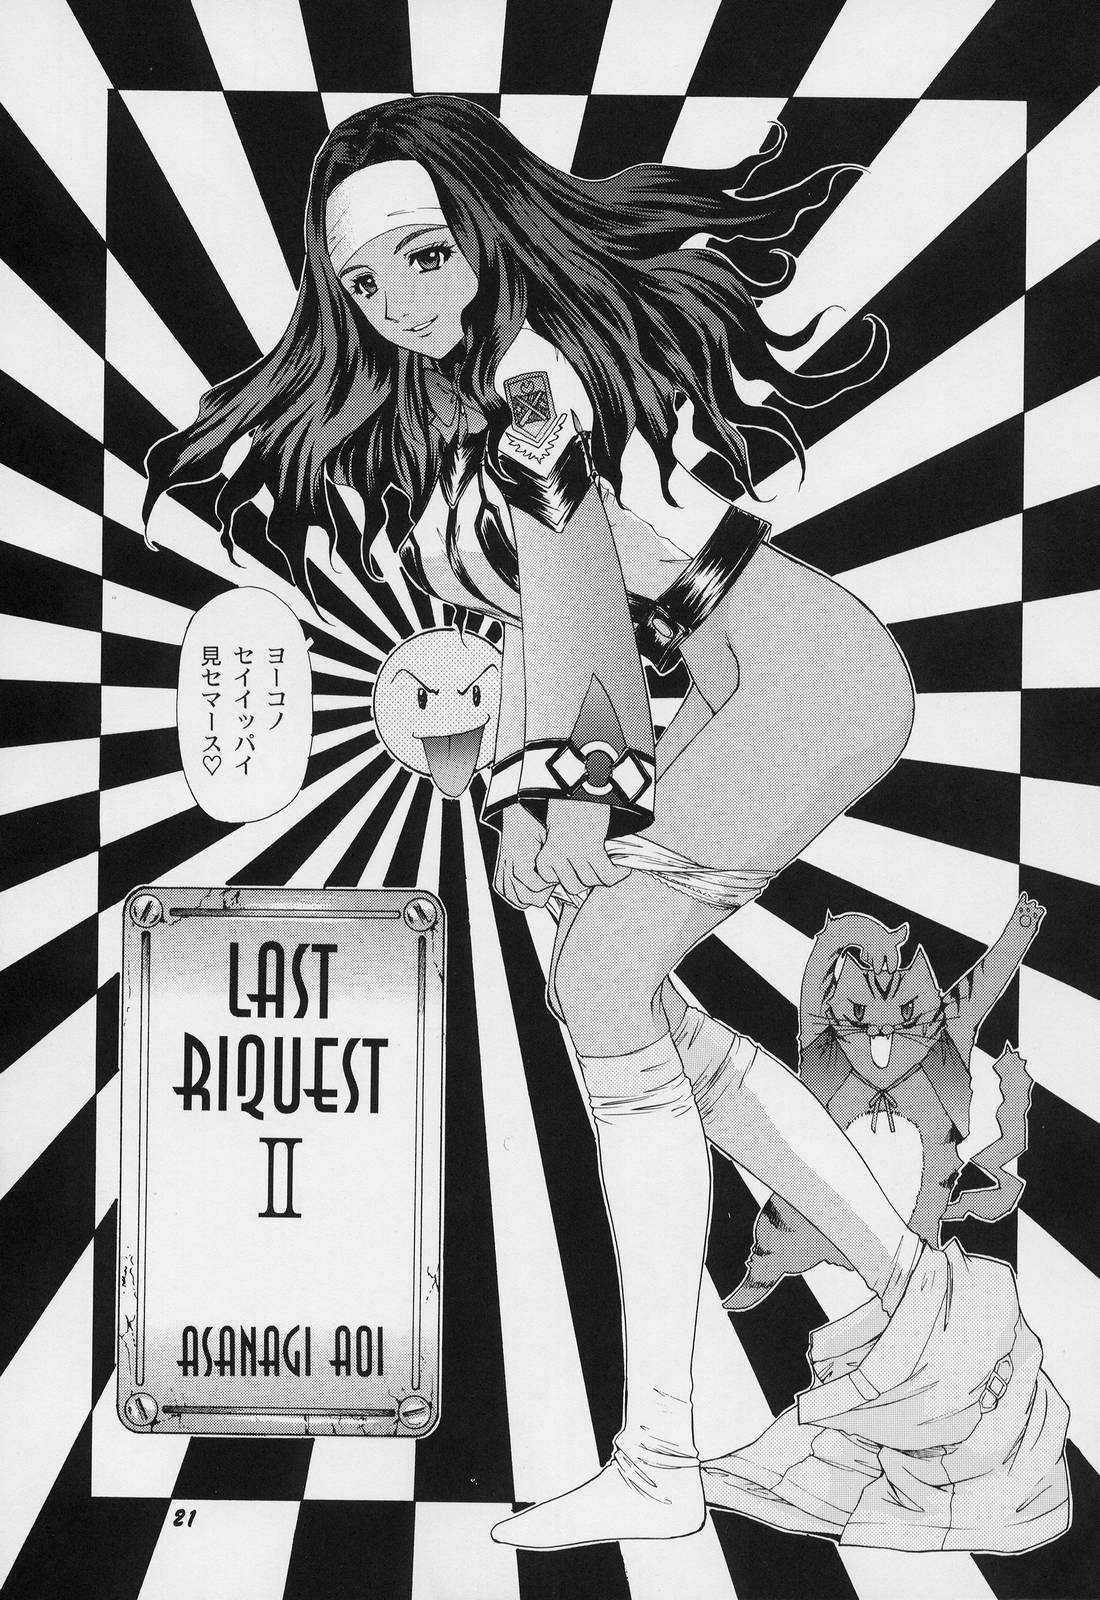 Asanagi Aoi - Last Riquest II 